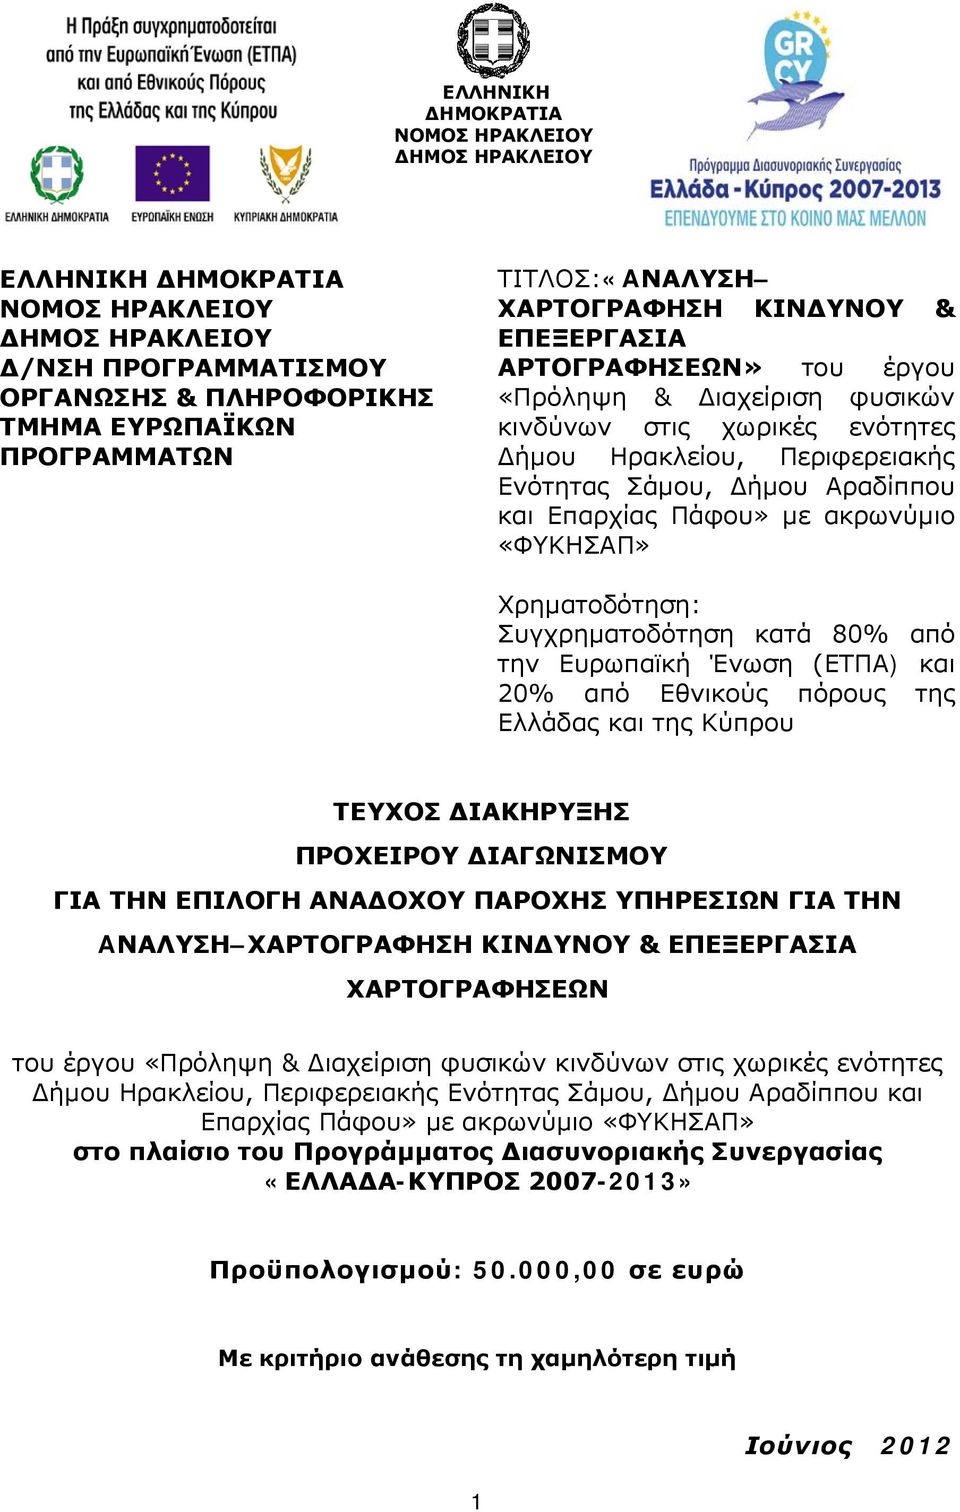 Πάφου» με ακρωνύμιο «ΦΥΚΗΣΑΠ» Χρηματοδότηση: Συγχρηματοδότηση κατά 80% από την Ευρωπαϊκή Ένωση (ΕΤΠΑ) και 20% από Εθνικούς πόρους της Ελλάδας και της Κύπρου ΤΕΥΧΟΣ ΔΙΑΚΗΡΥΞΗΣ ΠΡΟΧΕΙΡΟΥ ΔΙΑΓΩΝΙΣΜΟΥ